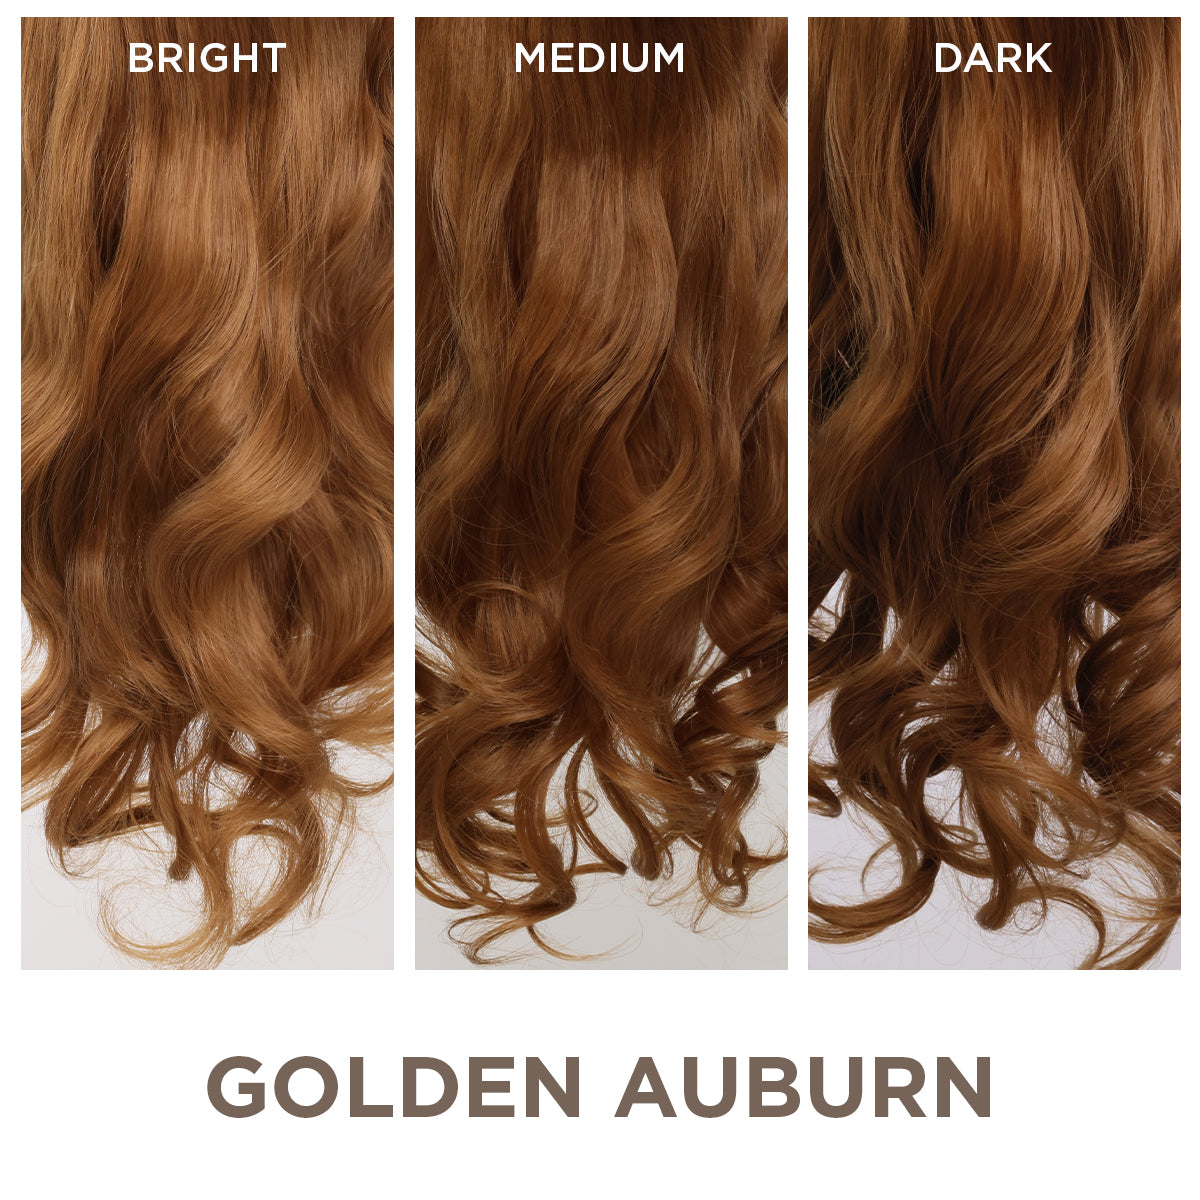 Golden Auburn + 1 FREE HALO